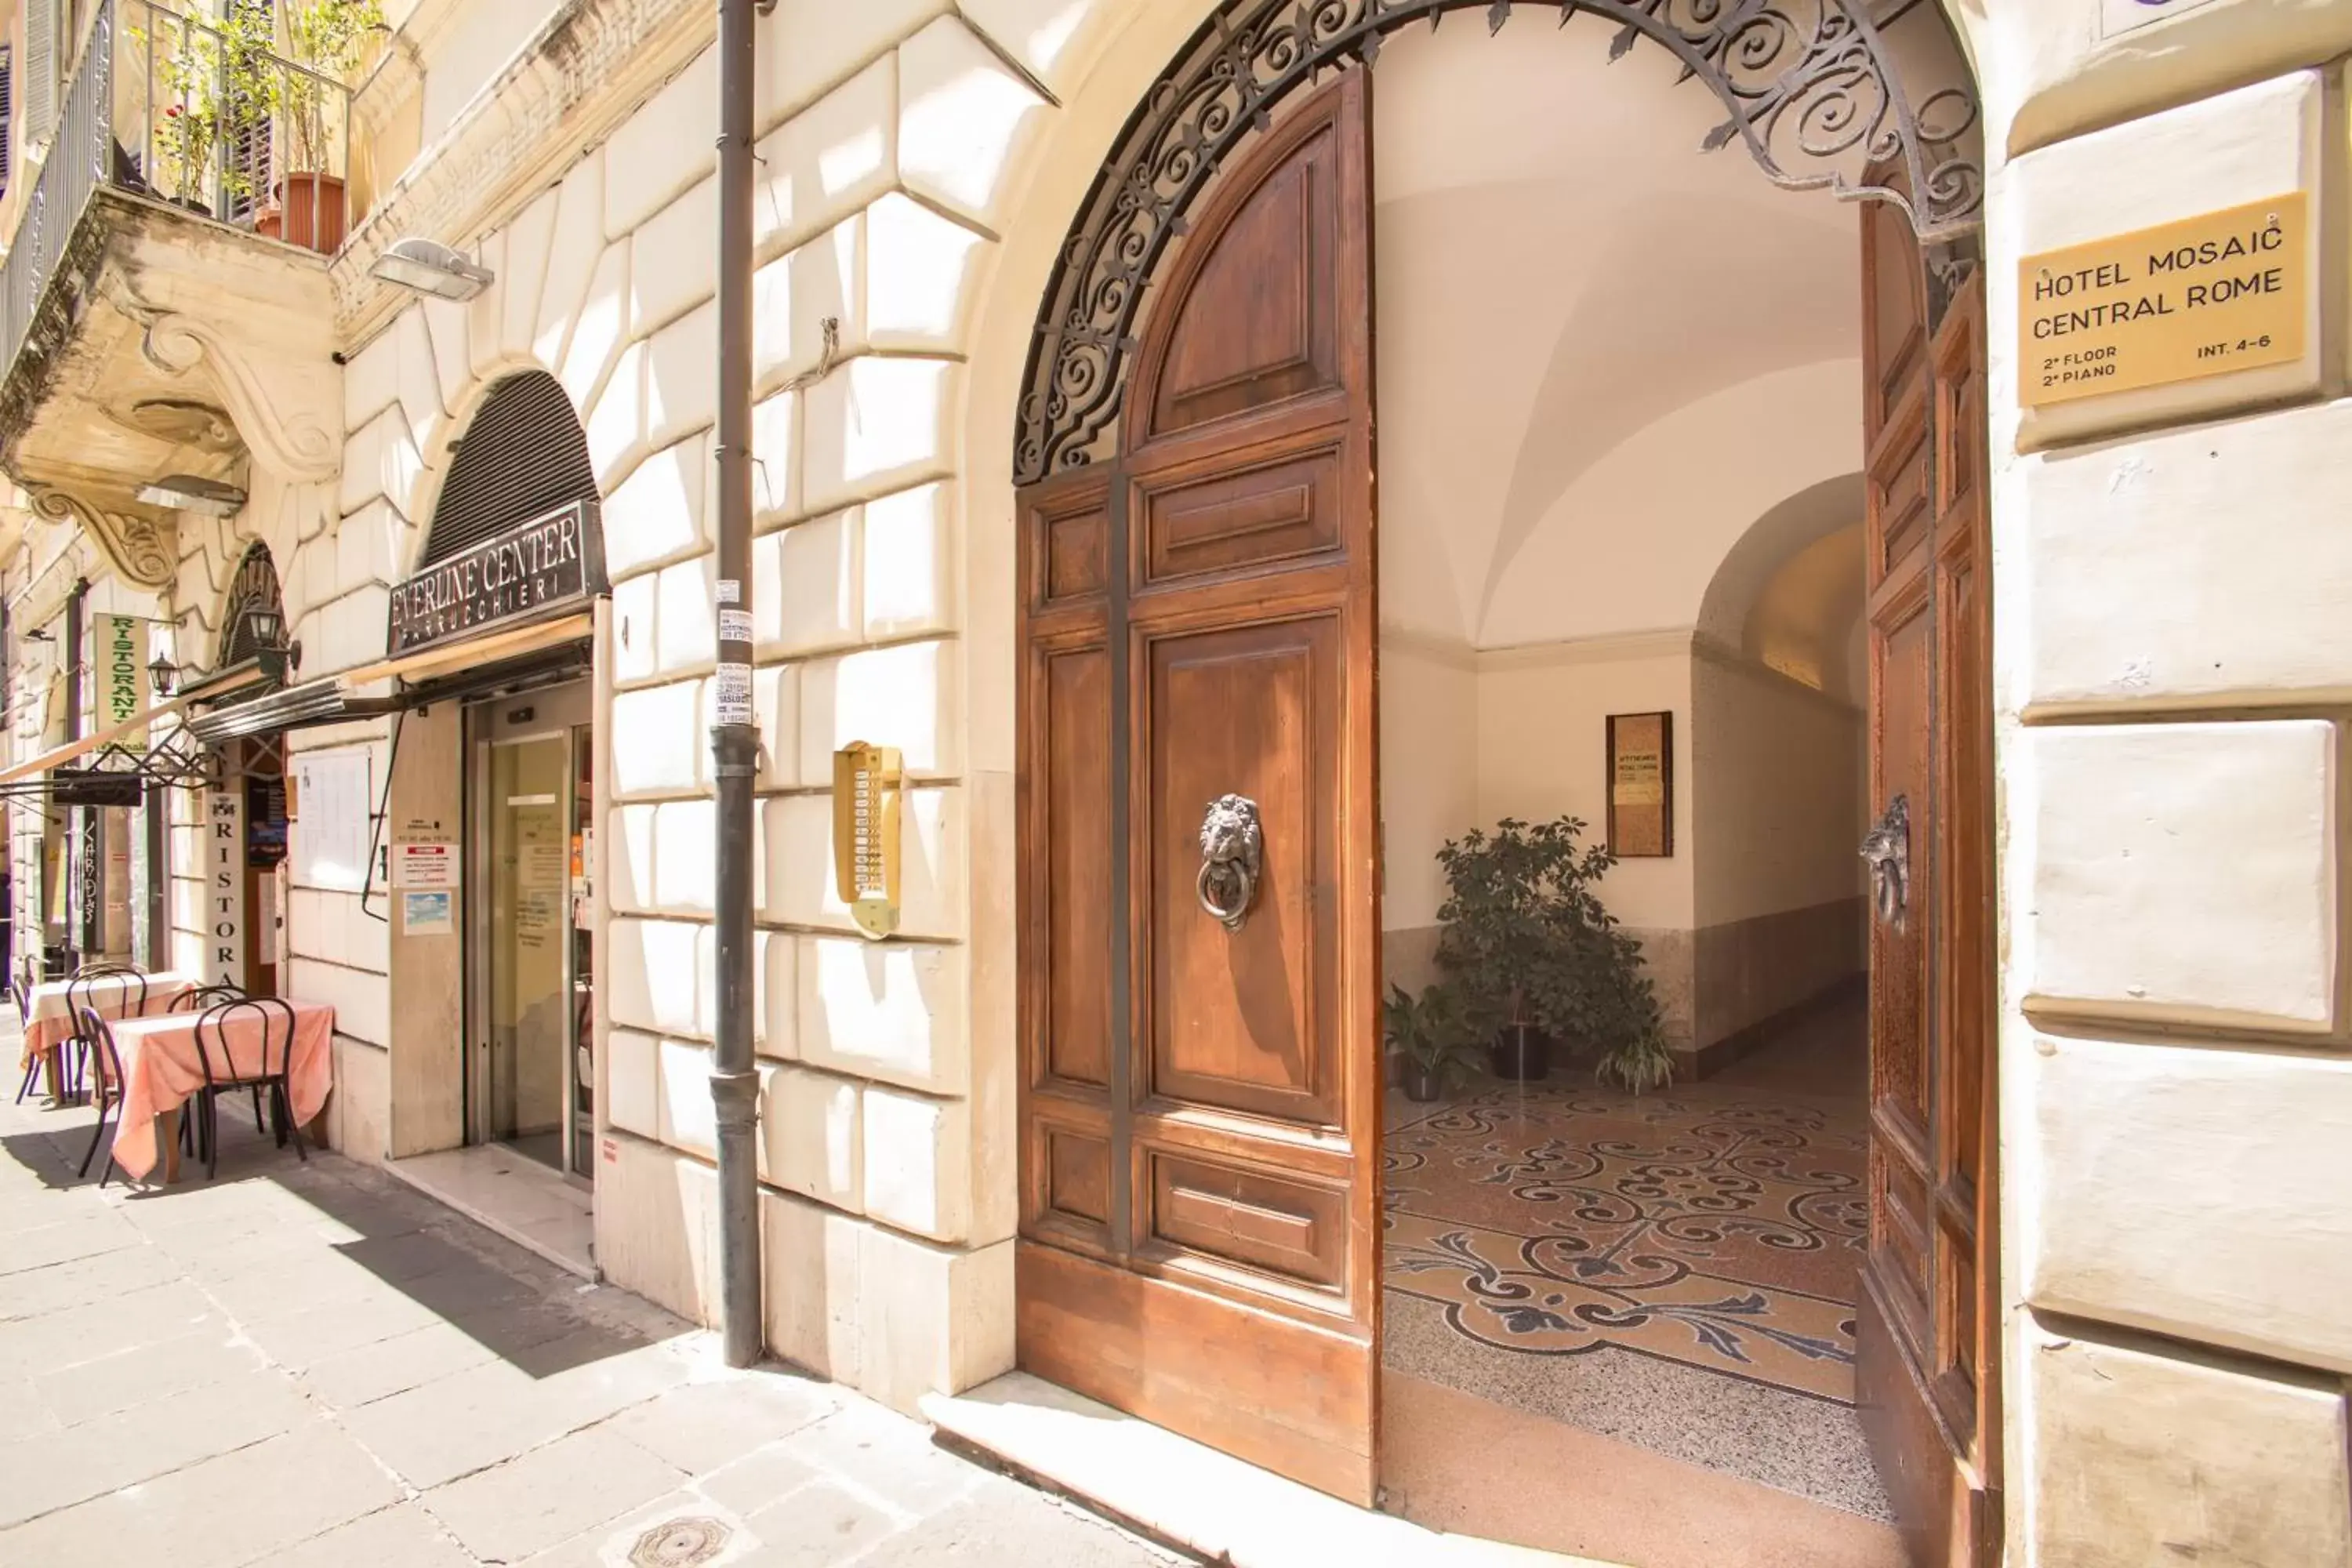 Facade/Entrance in Hotel Mosaic Central Rome